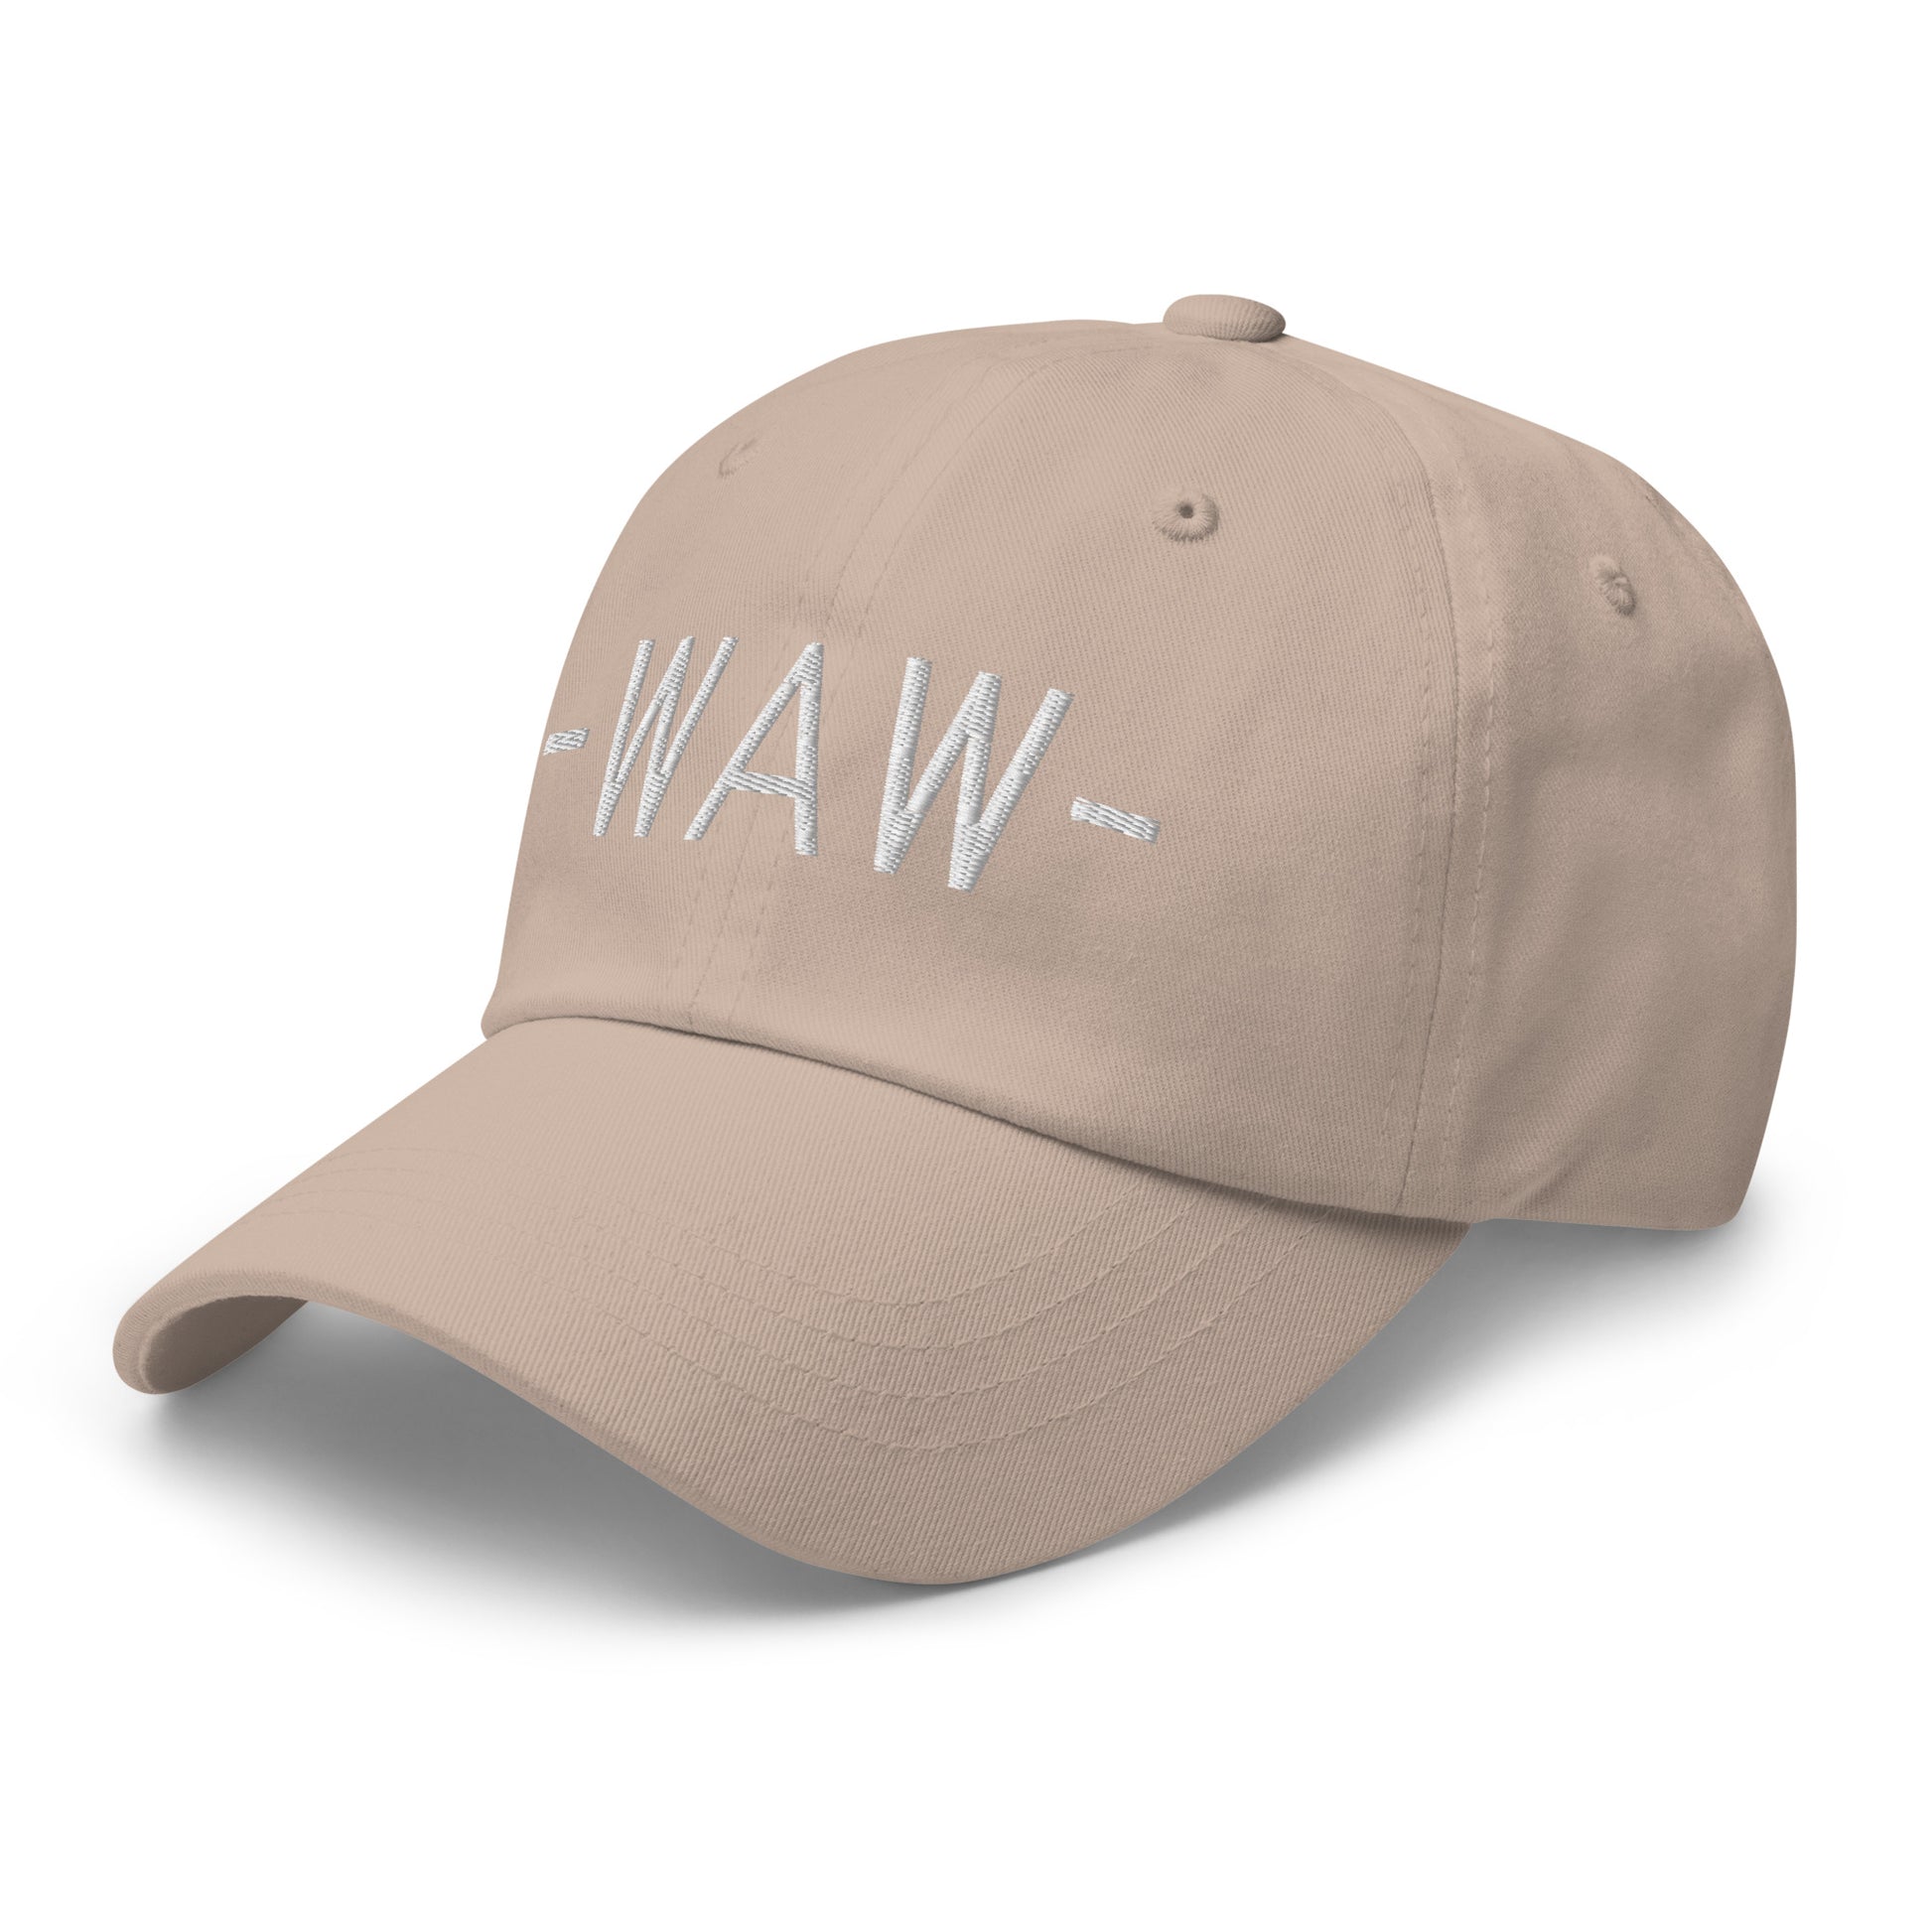 Souvenir Baseball Cap - White • WAW Warsaw • YHM Designs - Image 24